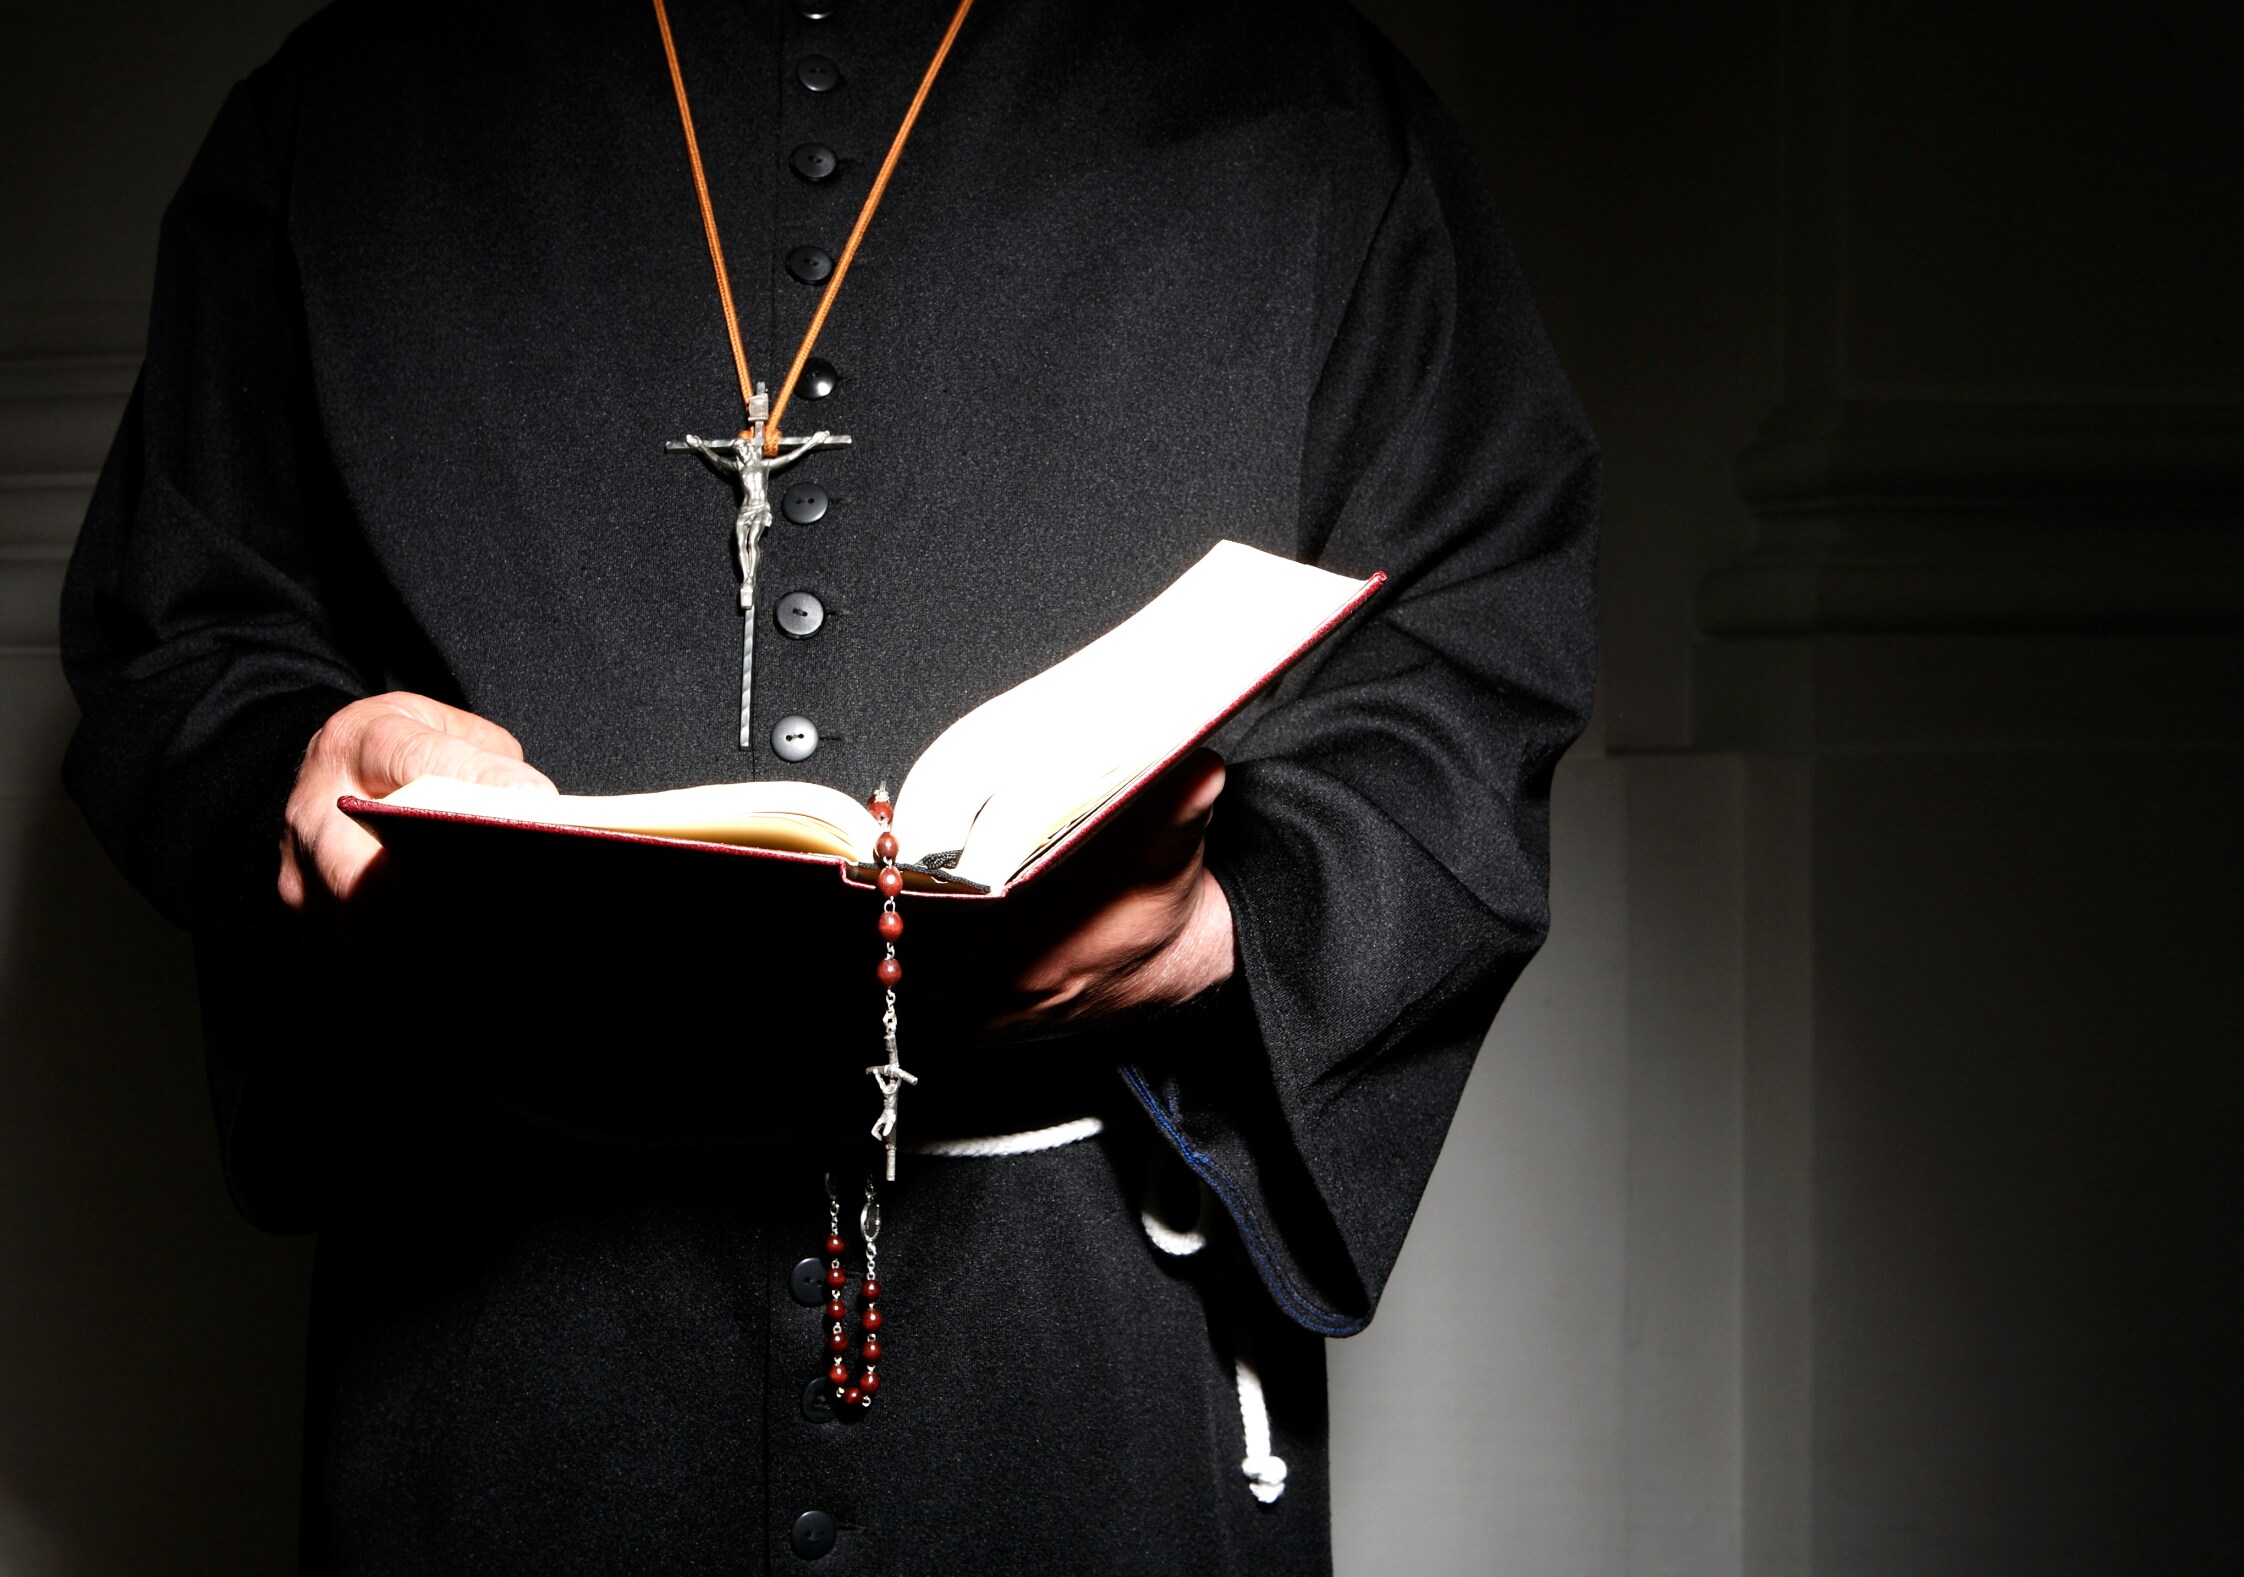 Katholieke kerk blokkeert benoeming van priester wegens oude melding van seksueel overschrijdend gedrag